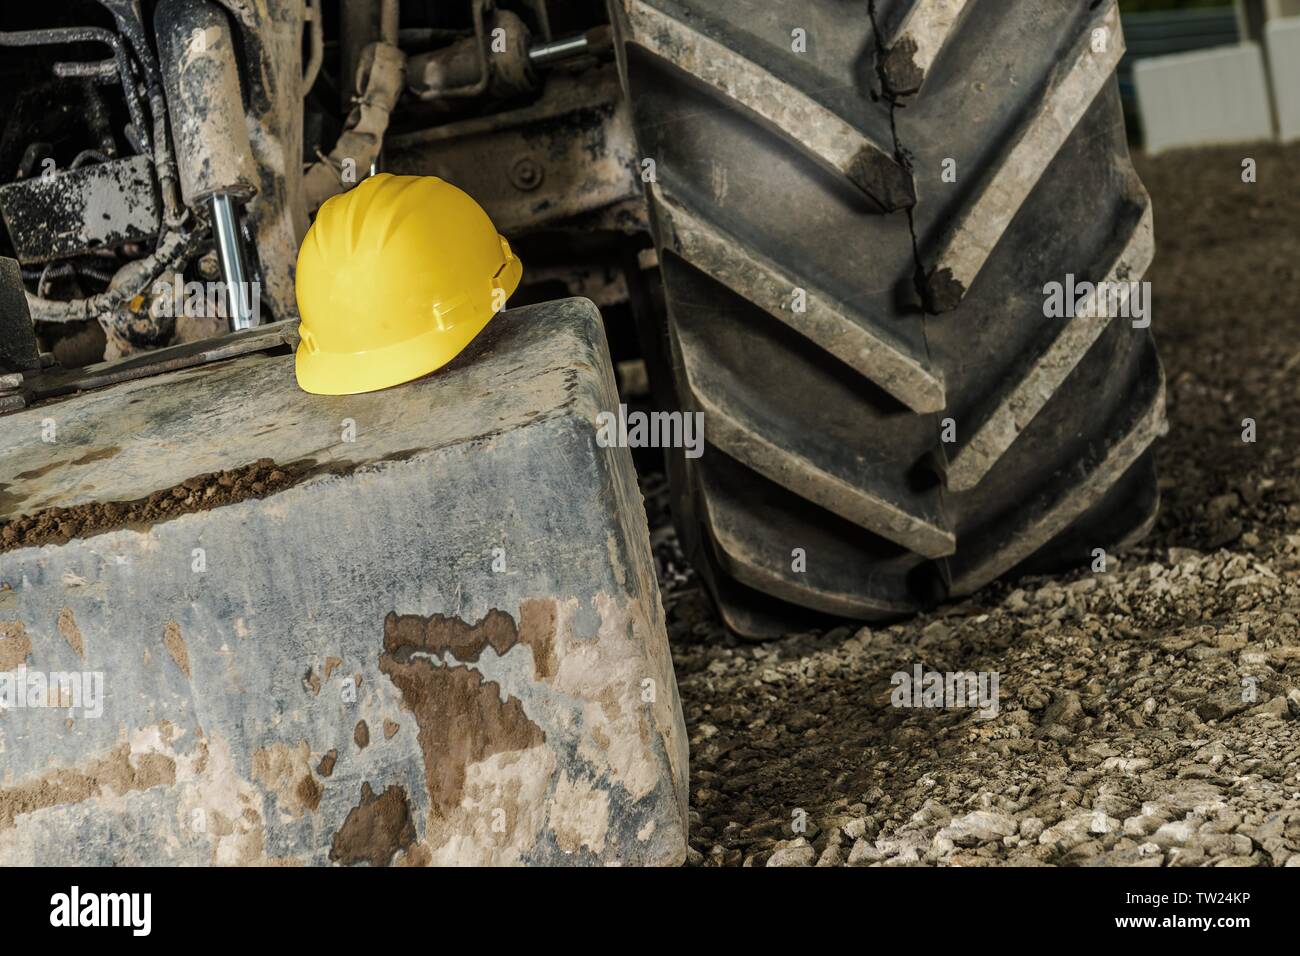 Concept de sécurité industrielle avec un casque jaune et le matériel de construction lourde. Banque D'Images